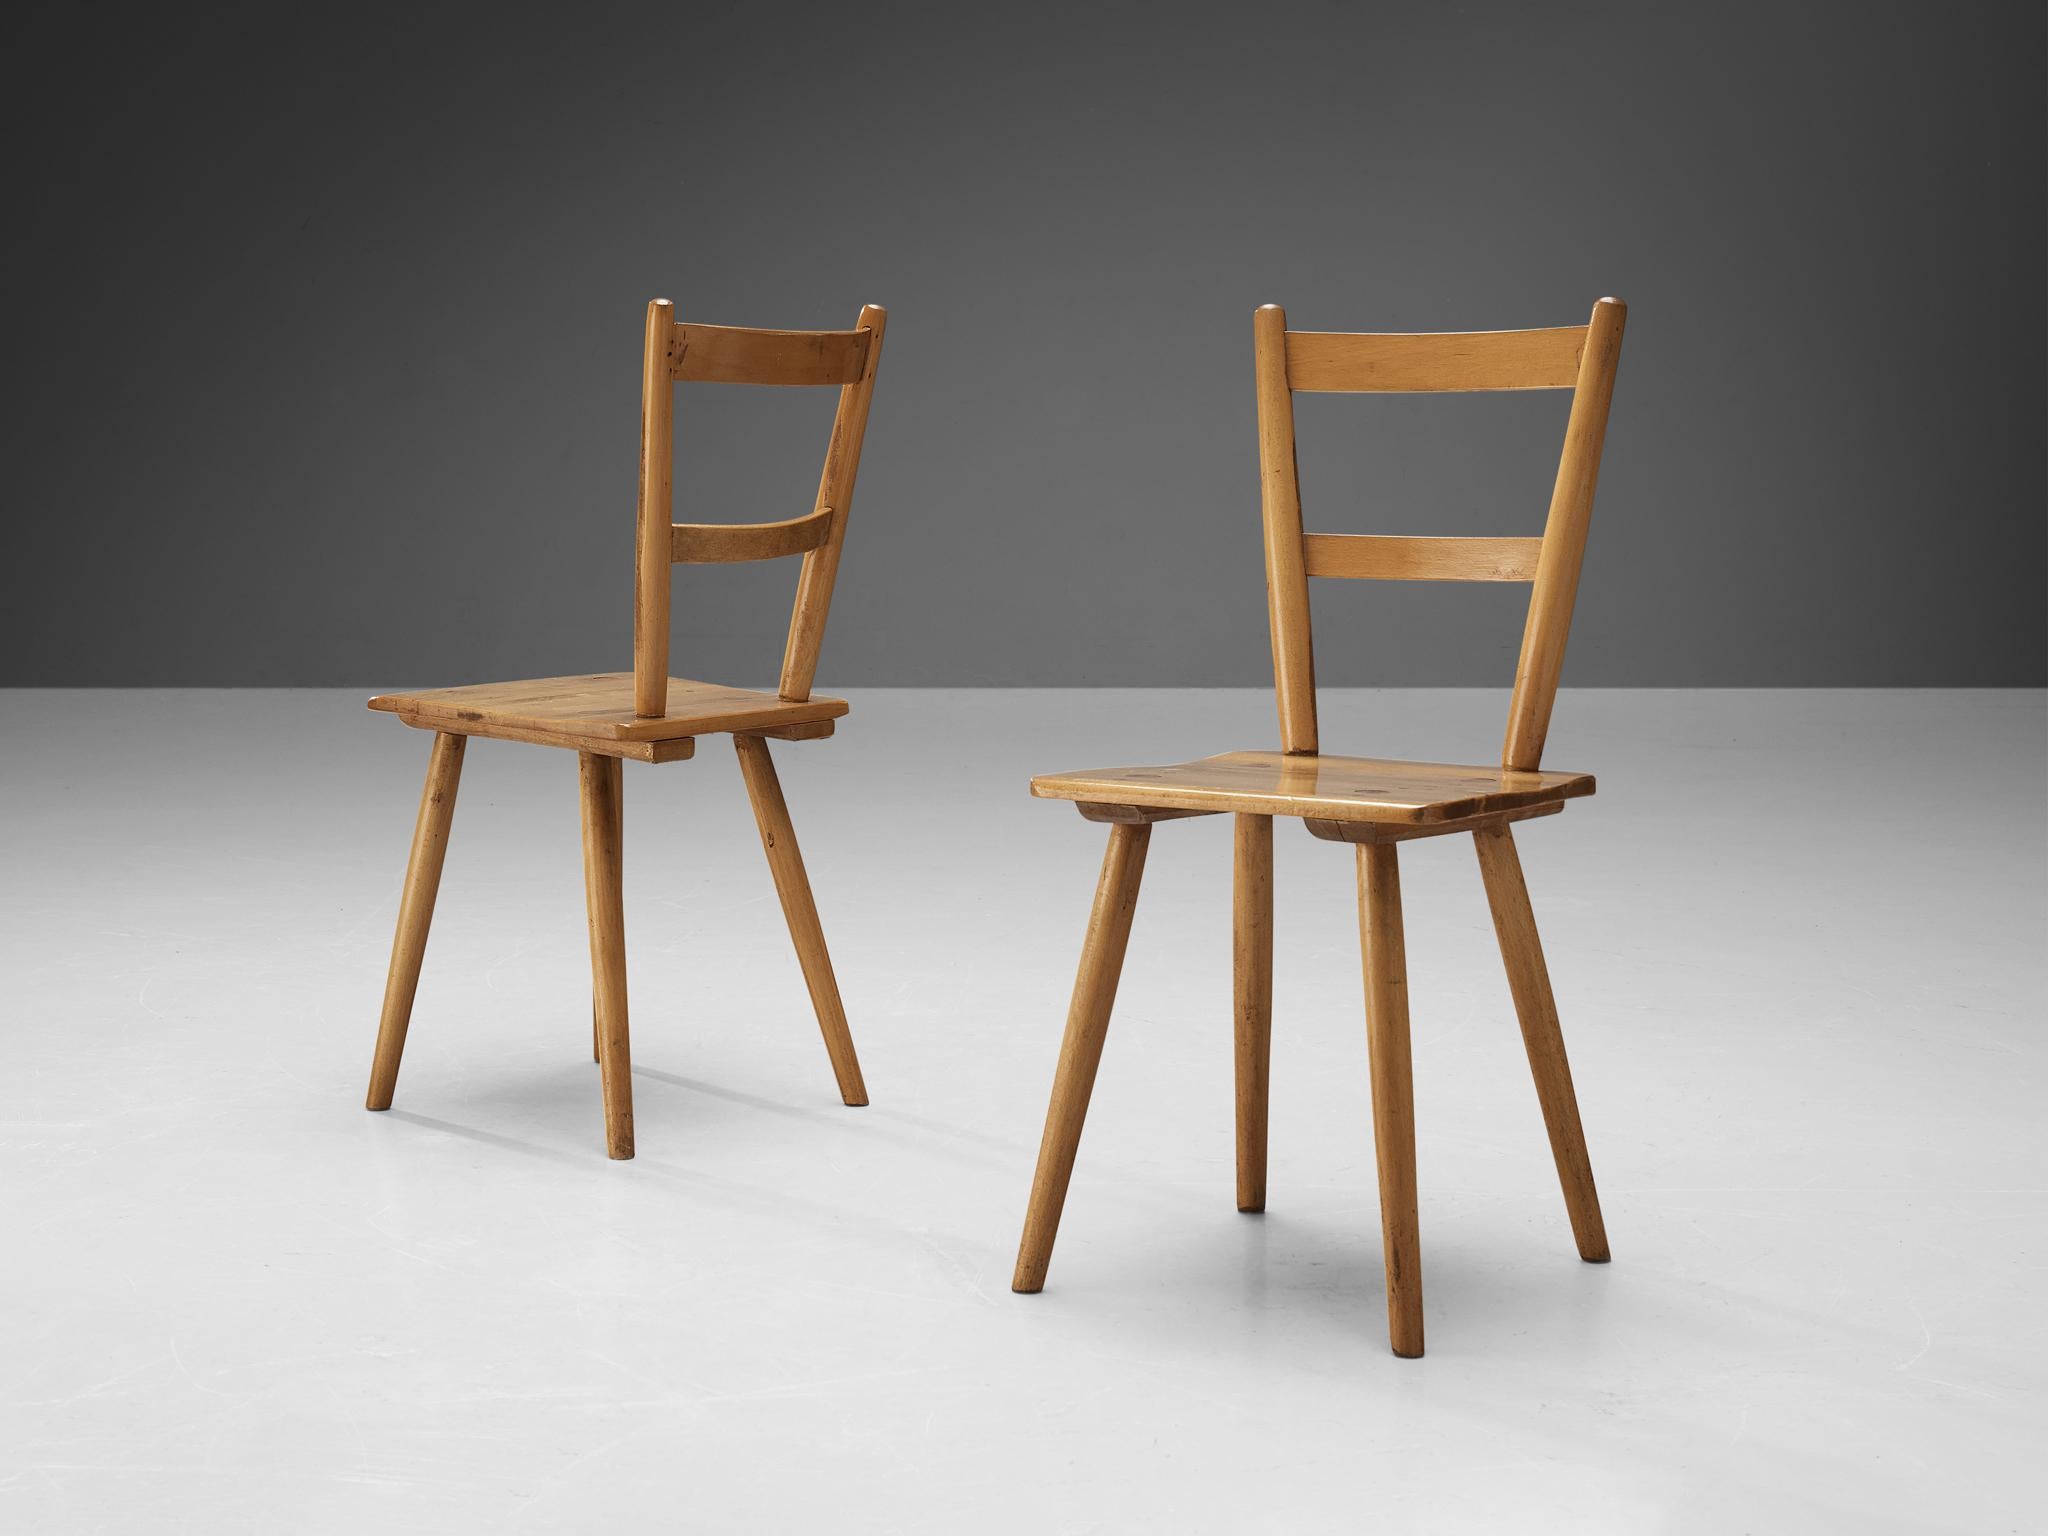 Esszimmerstühle, Buche, Niederlande, 1960er Jahre. 

Ein Paar bescheidene niederländische Esszimmerstühle. Diese modernen Stühle ähneln dem Stil der Entwürfe des britischen Möbelherstellers Ercol. Diese puritanischen, schlichten Stühle mit zwei